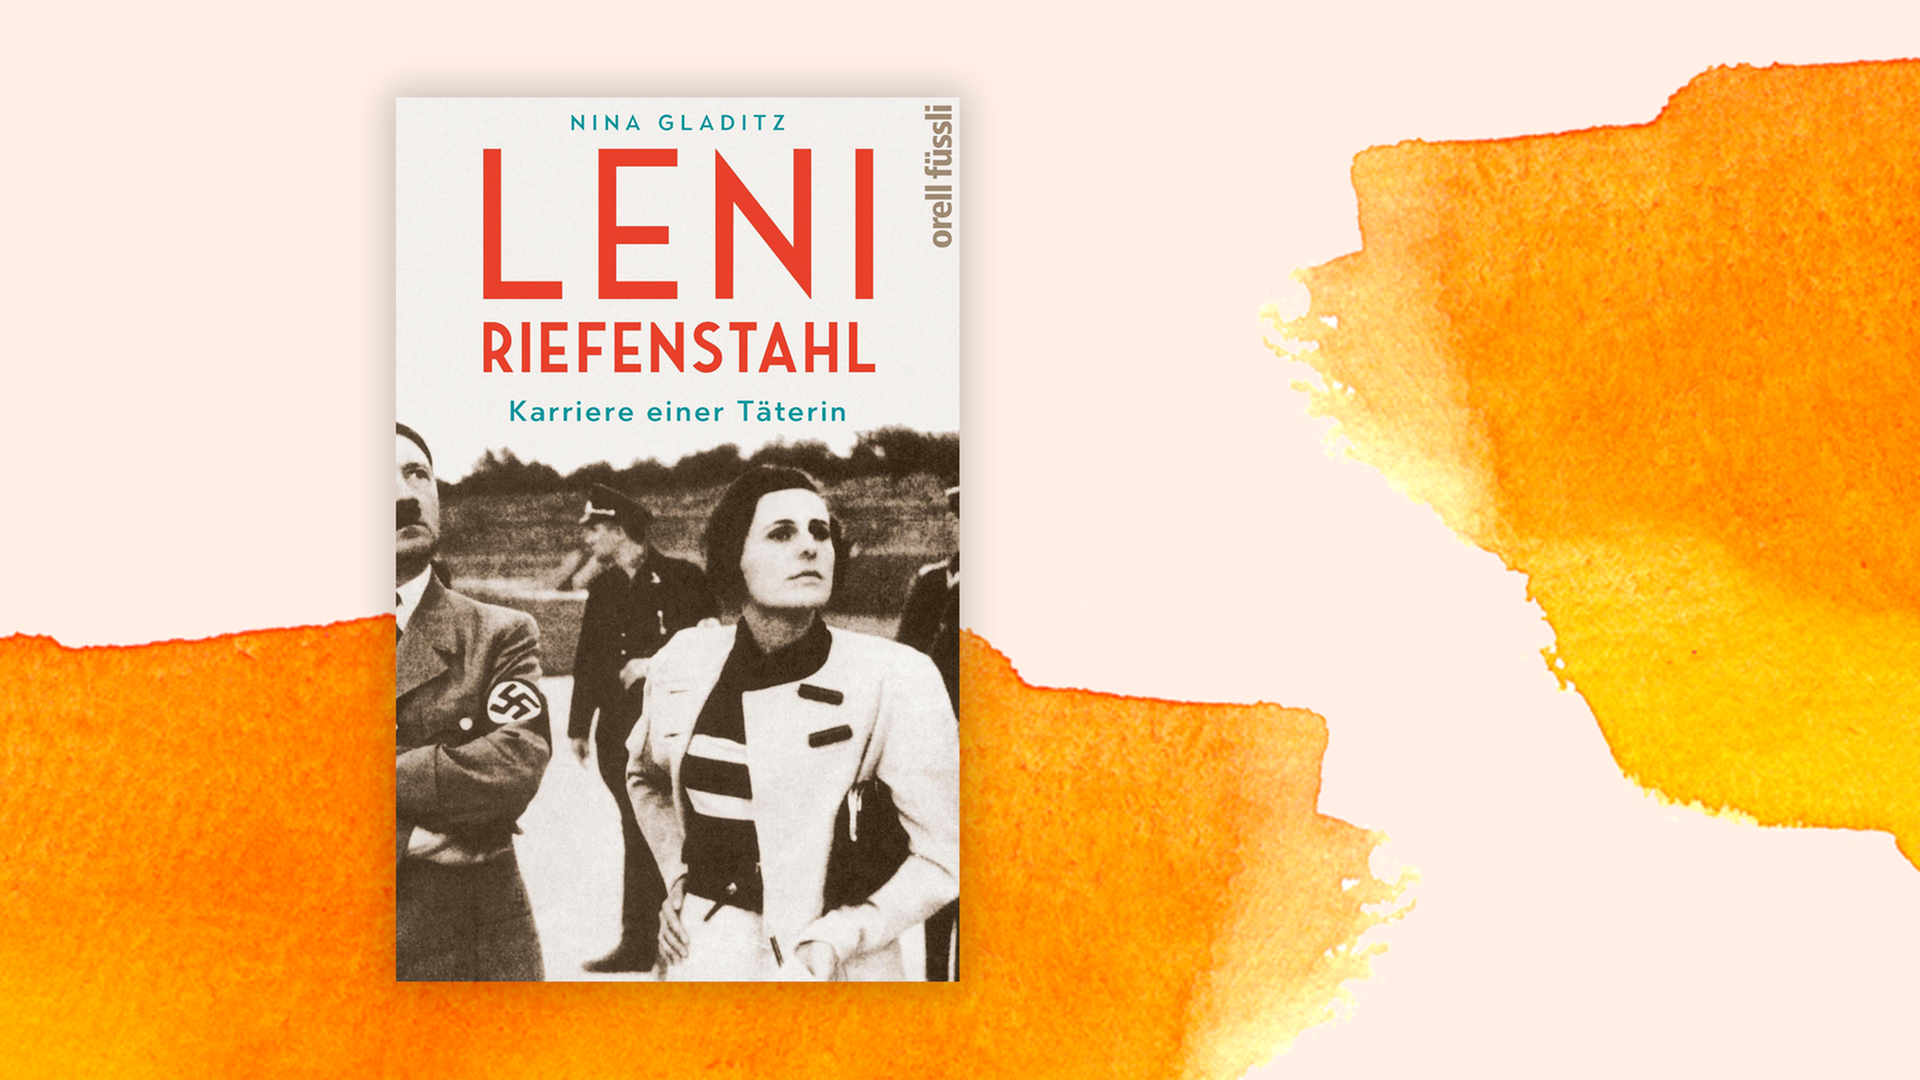 Zu sehen ist das Cover des Buches "Leni Riefenstahl - Karriere einer Täterin" von Nina Gladitz.